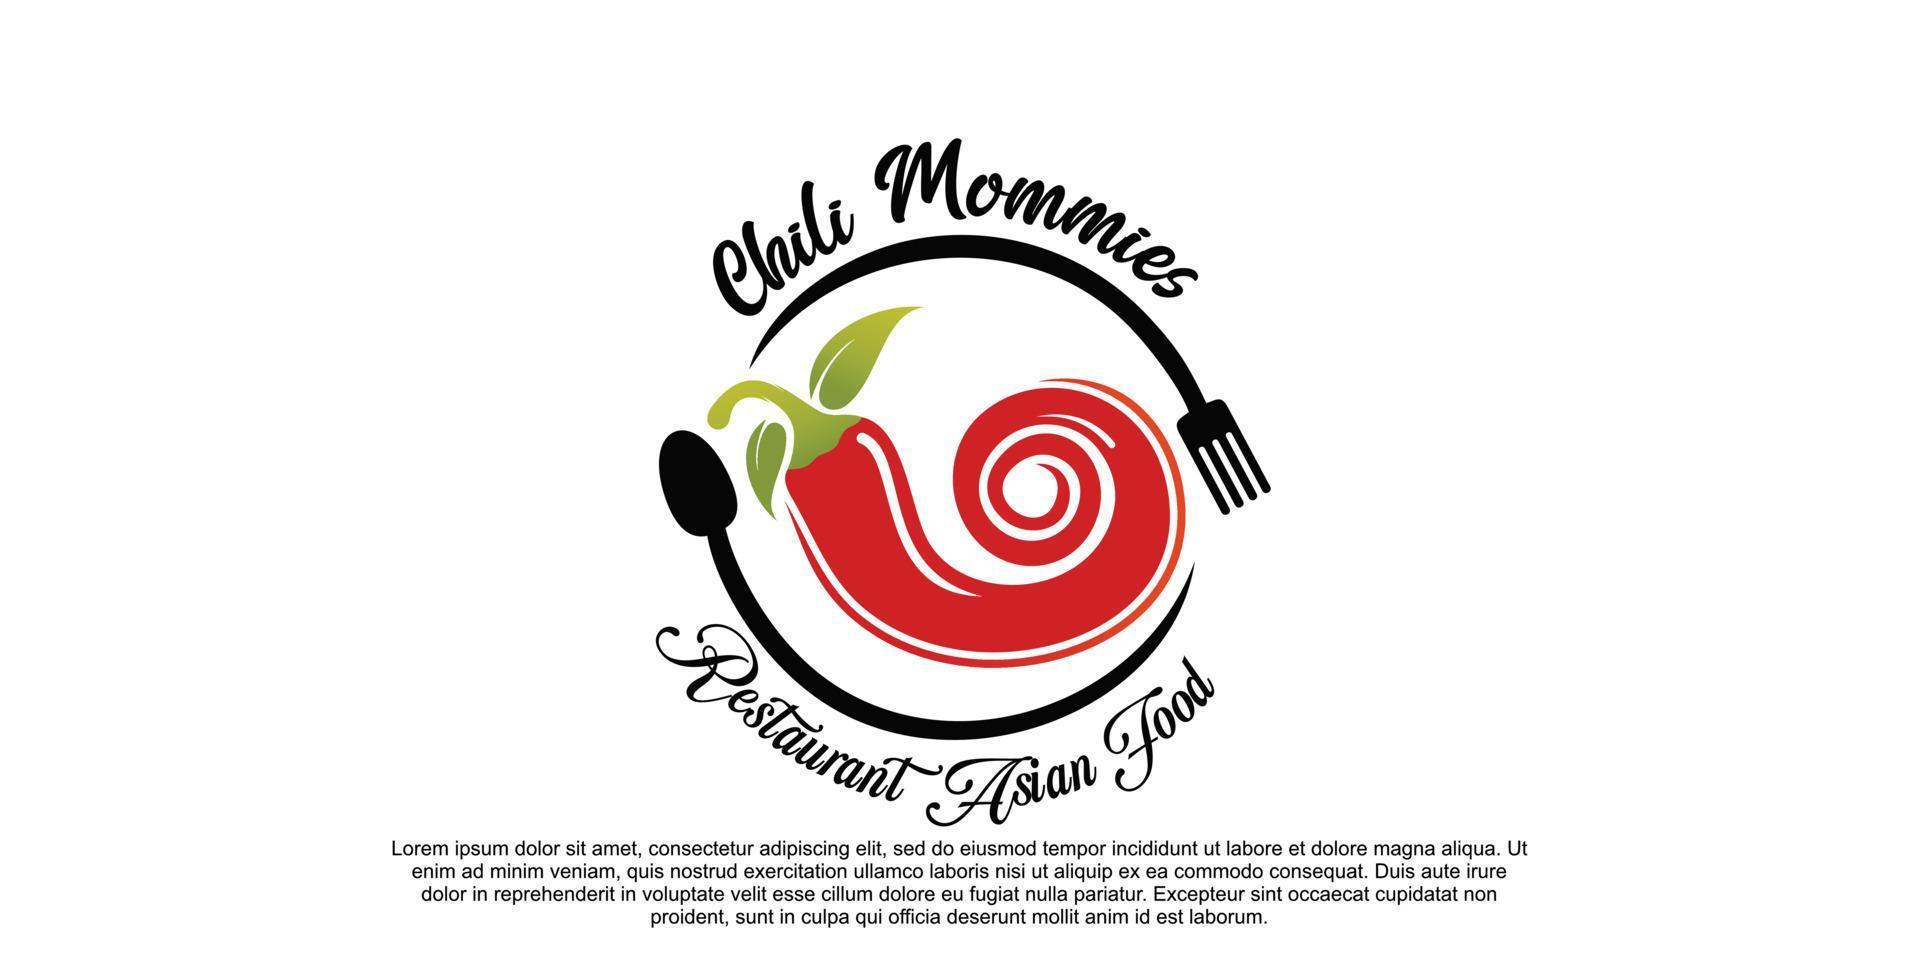 création de logo chili mommies avec concept créatif vecteur premium partie 2